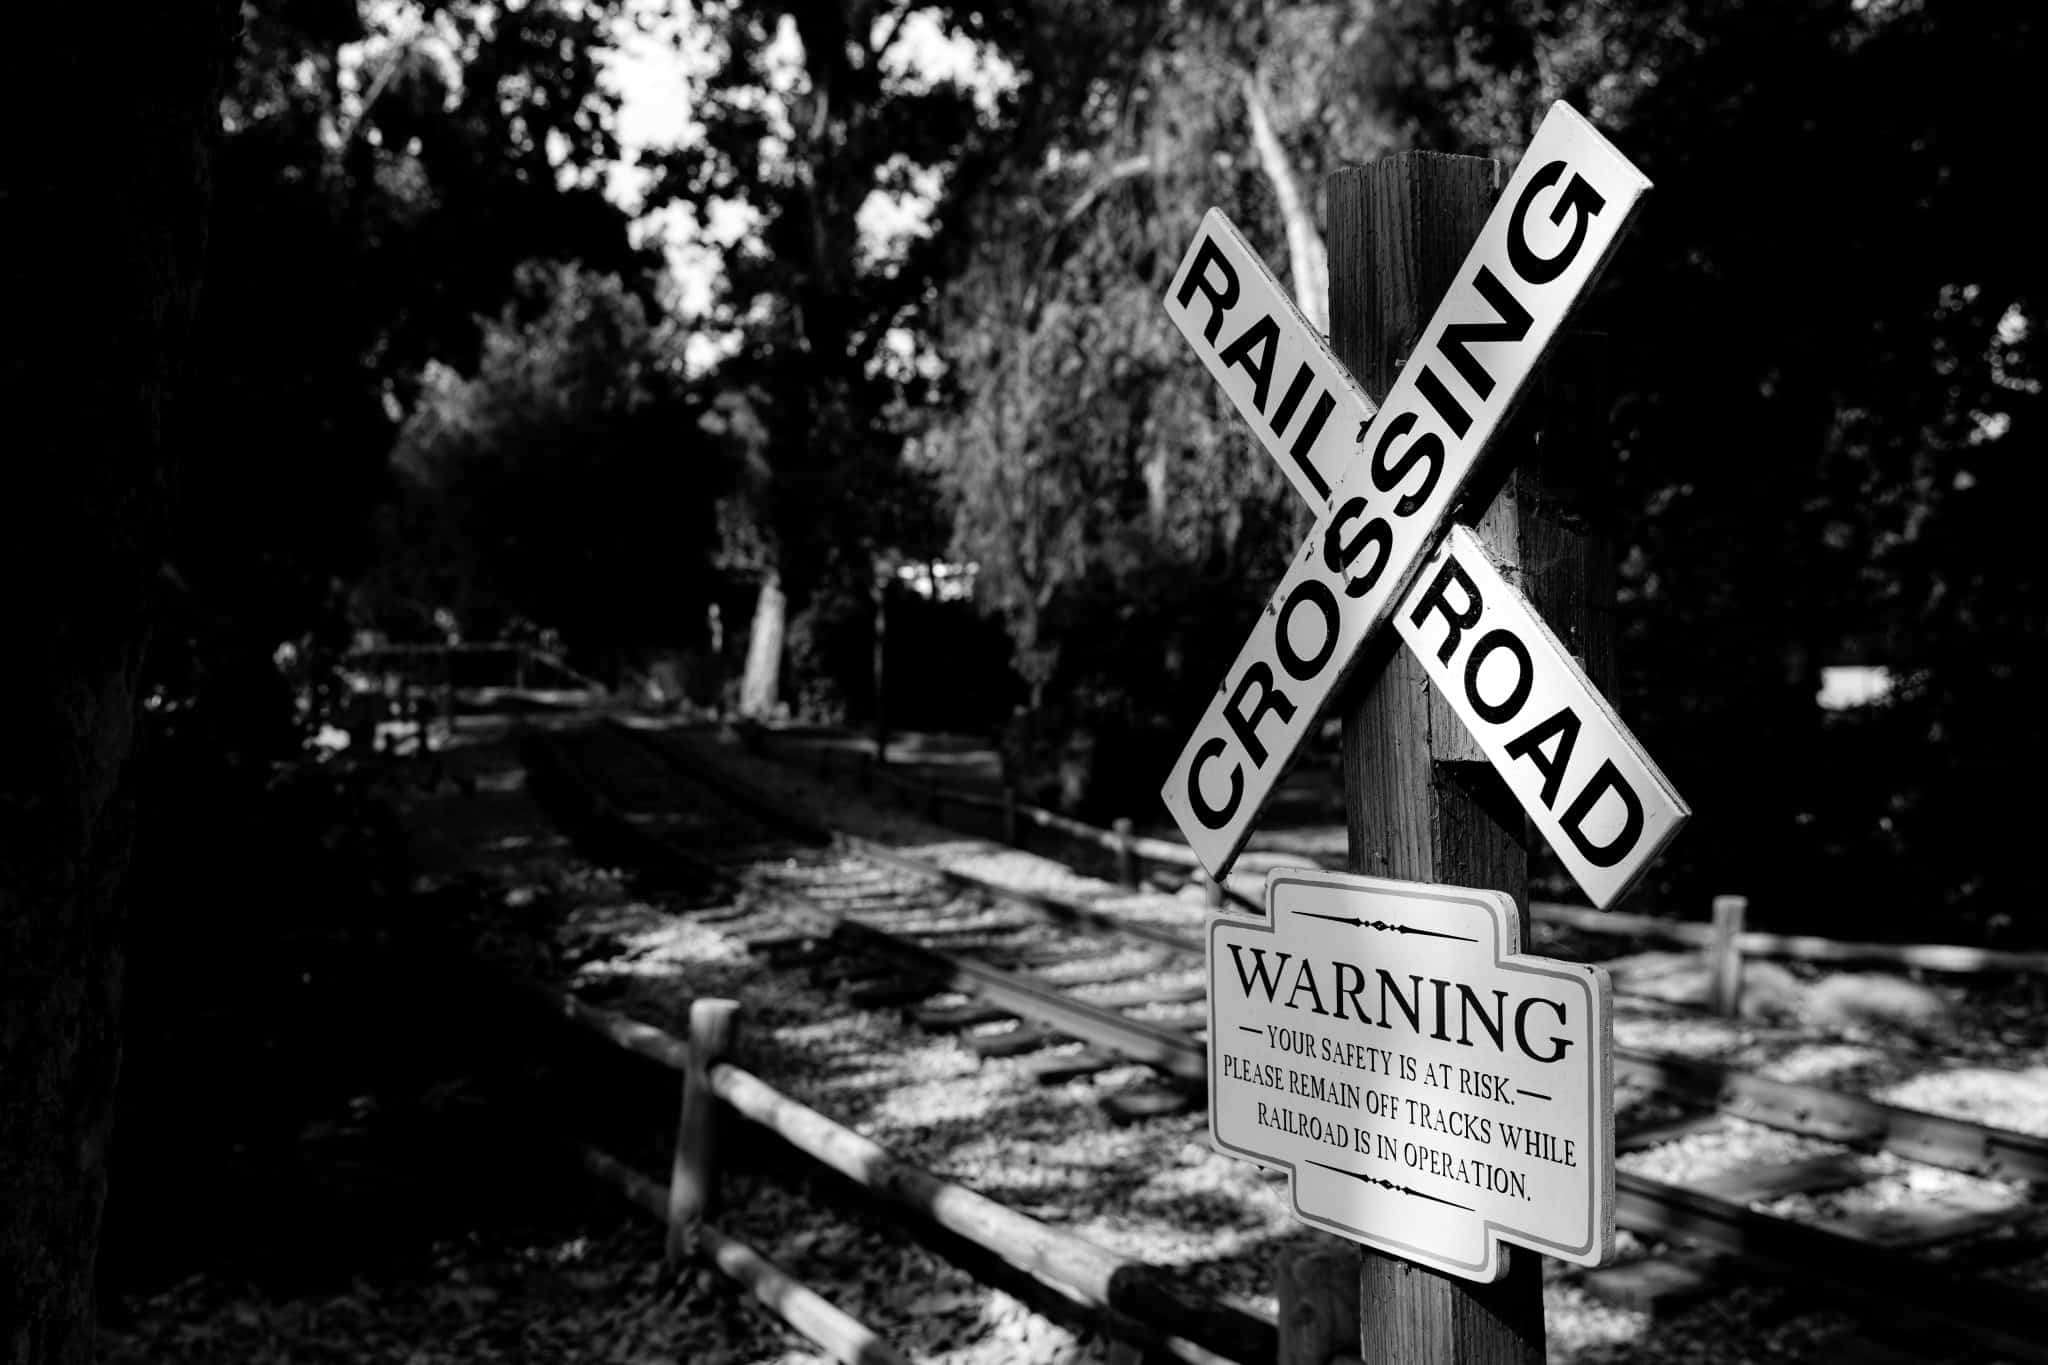 Railroad crossing sign near railway